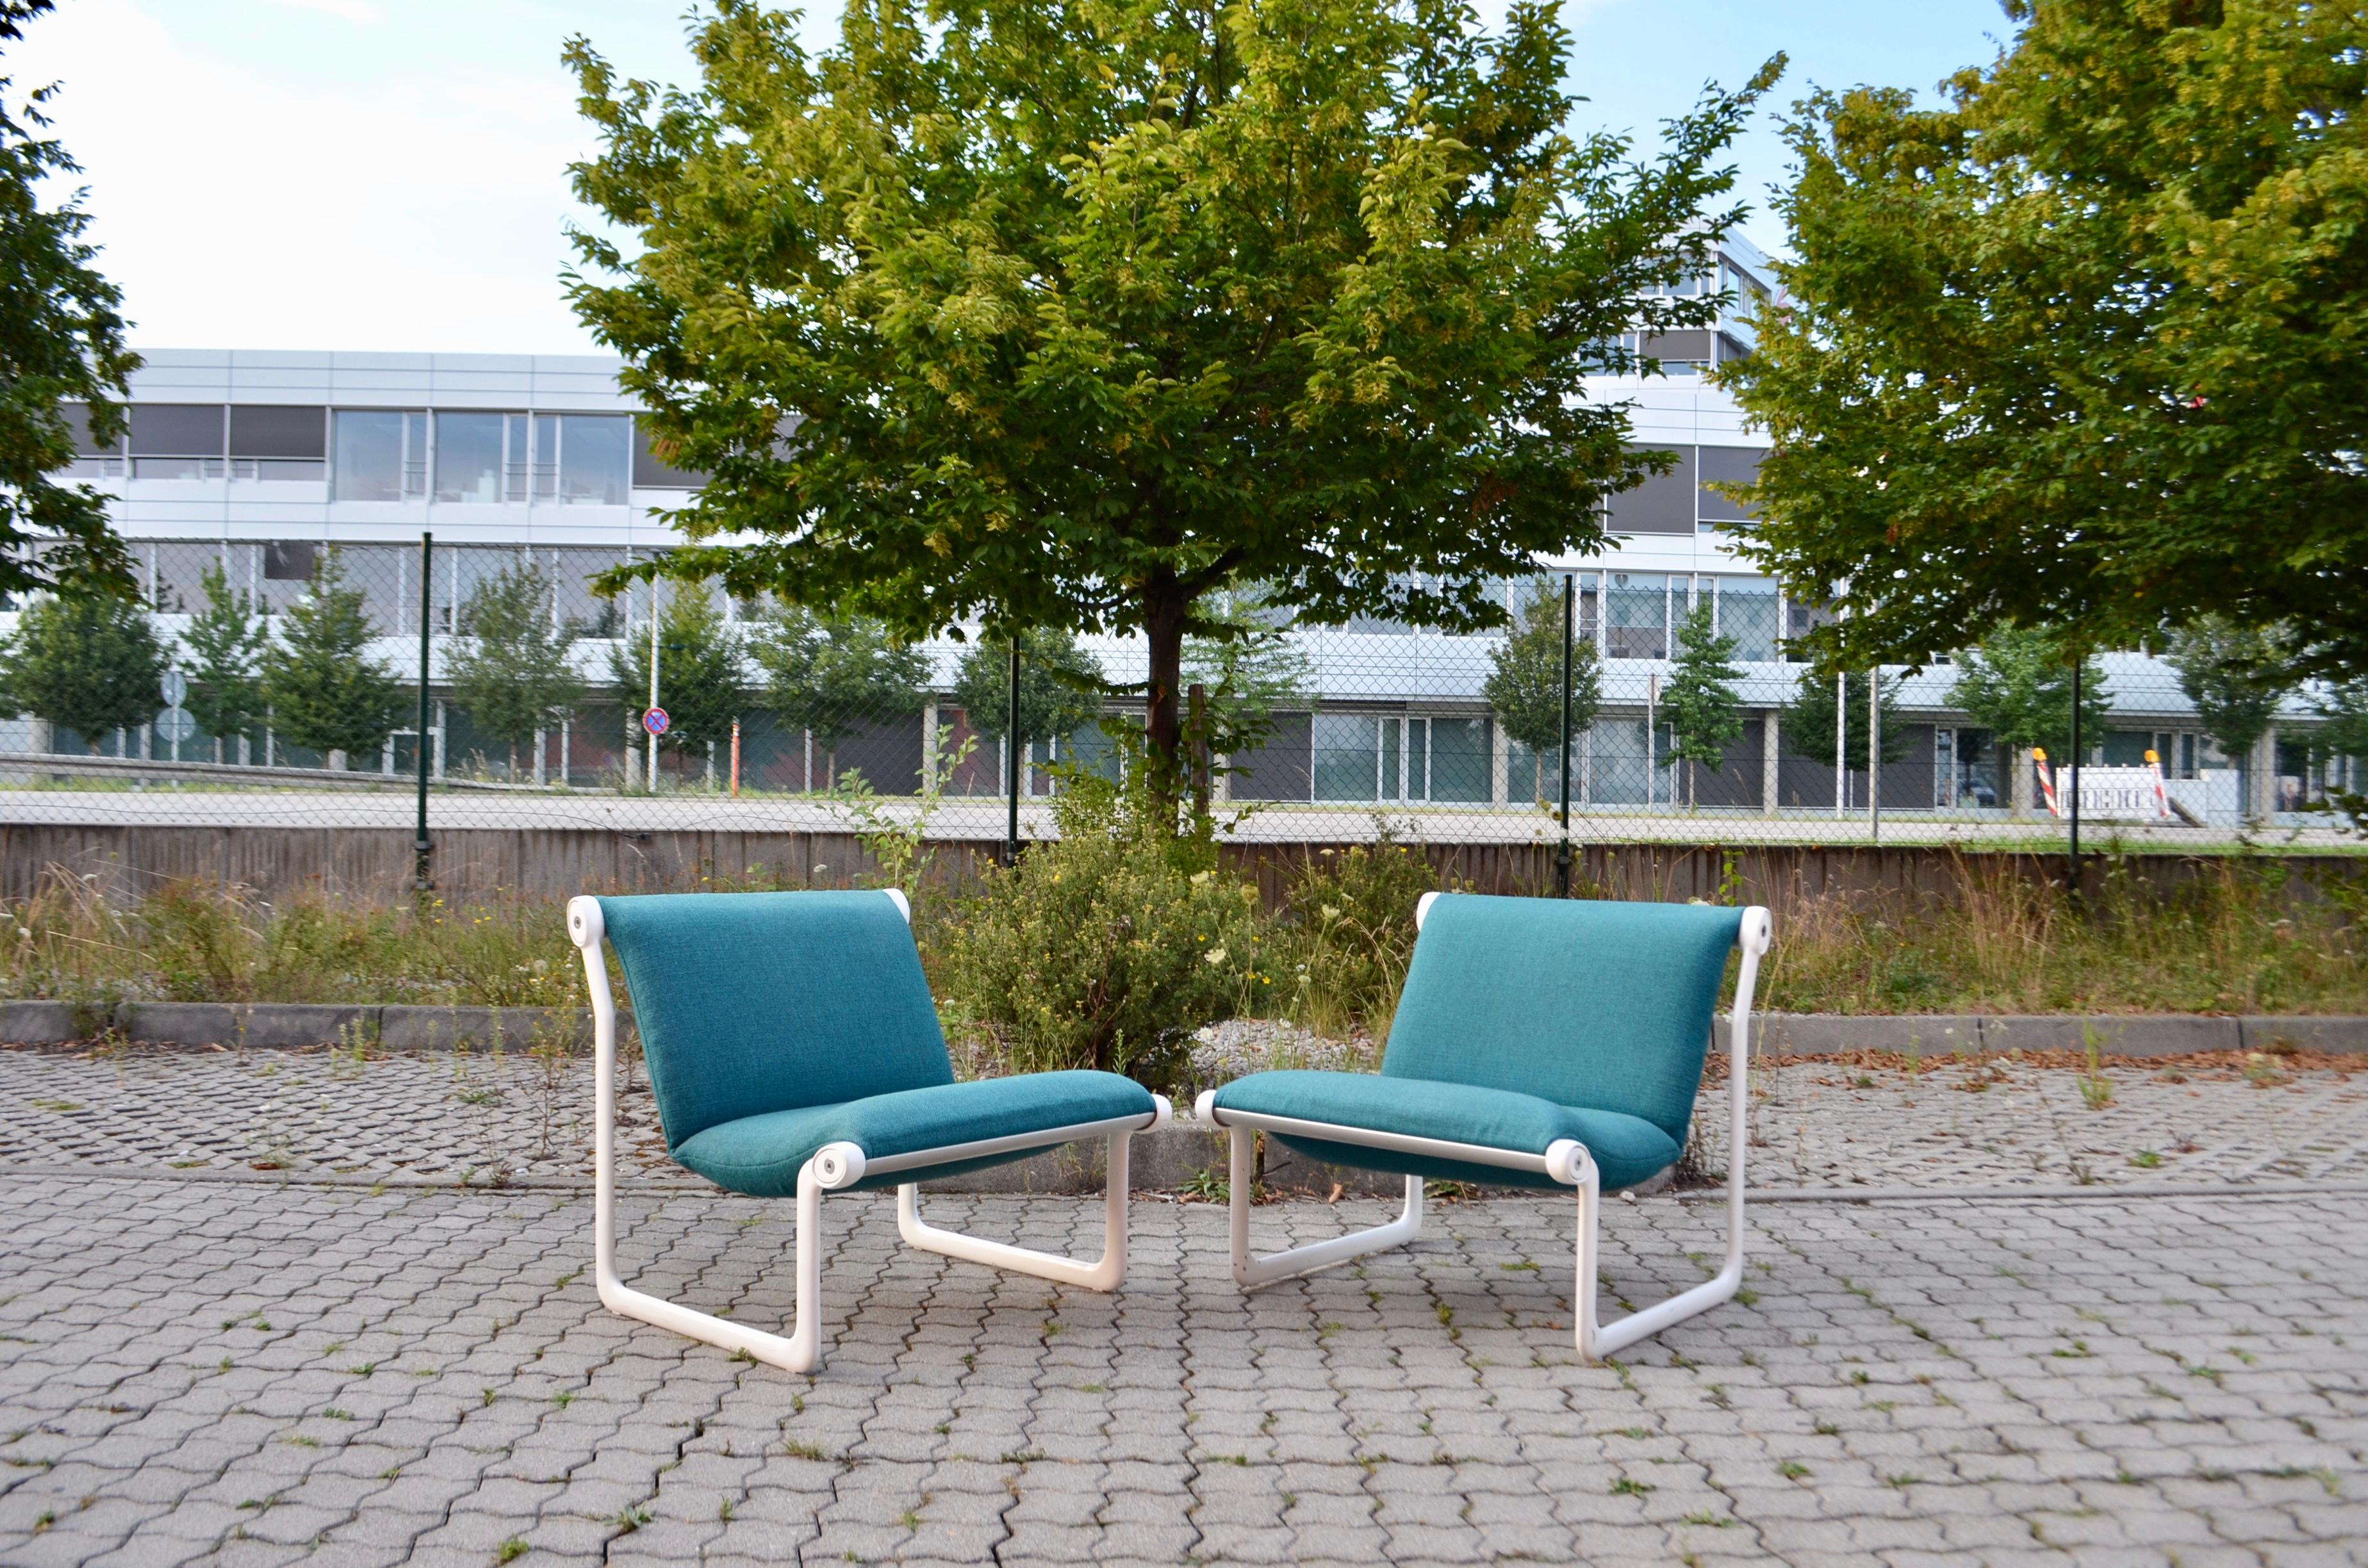 Knoll International a fabriqué ces chaises.
Bruce Hannah et Andrew Morrison l'ont conçu vers 1970 et l'ont utilisé dans des espaces publics ainsi que dans des salles de séjour.
Le cadre métallique est en fonte d'aluminium et il est recouvert d'un